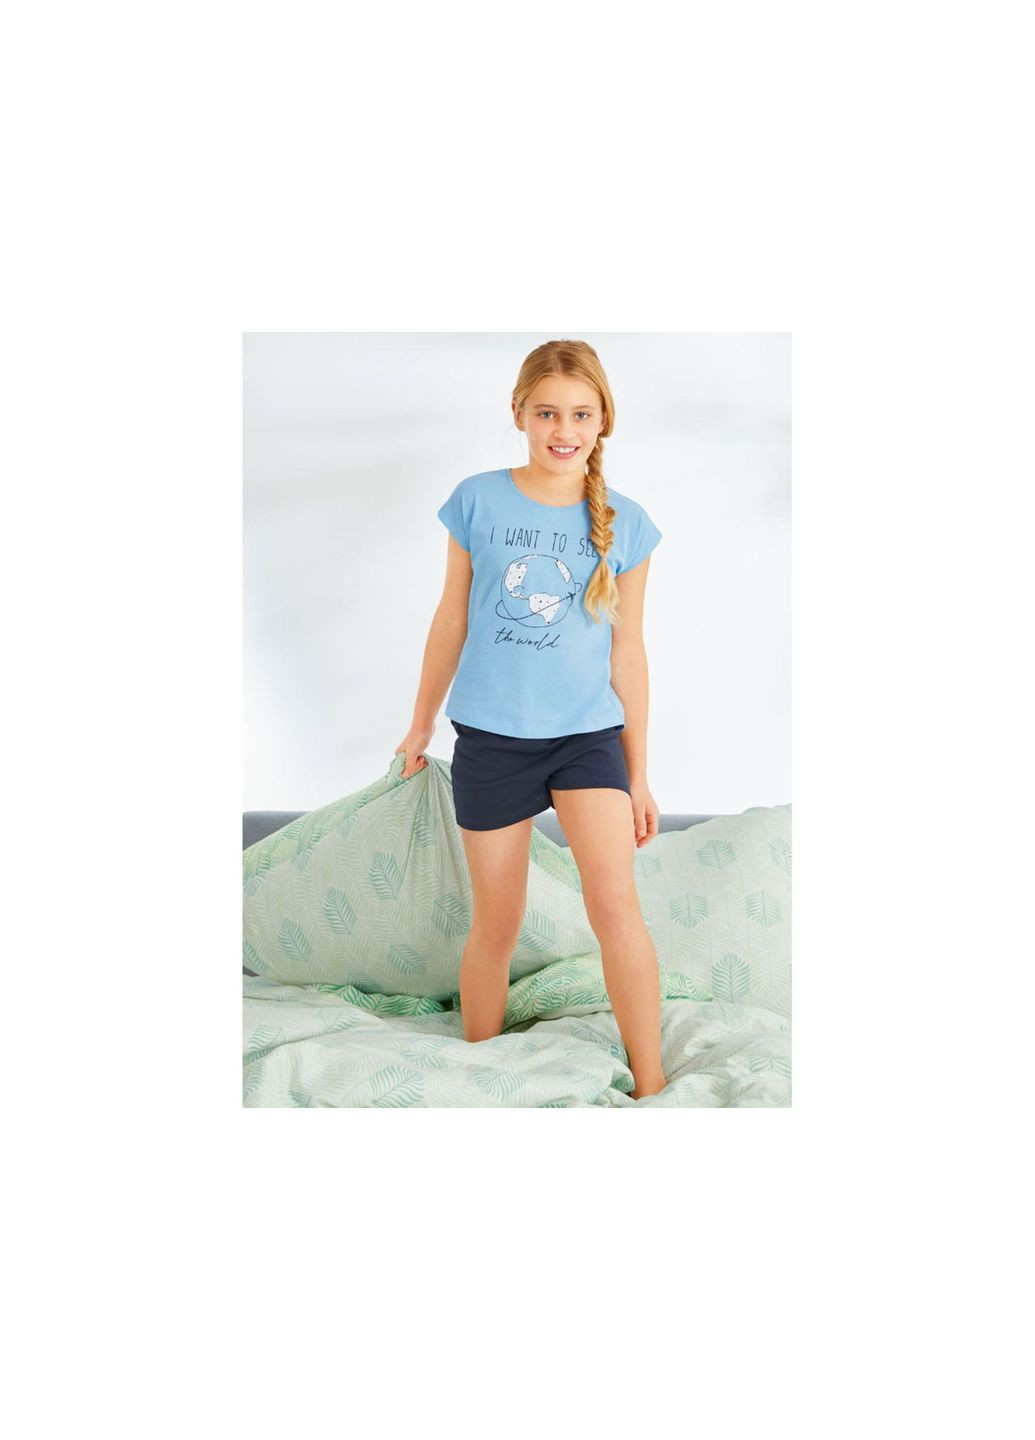 Комбинированная всесезон пижама летняя для девочки футболка + шорты Pepperts